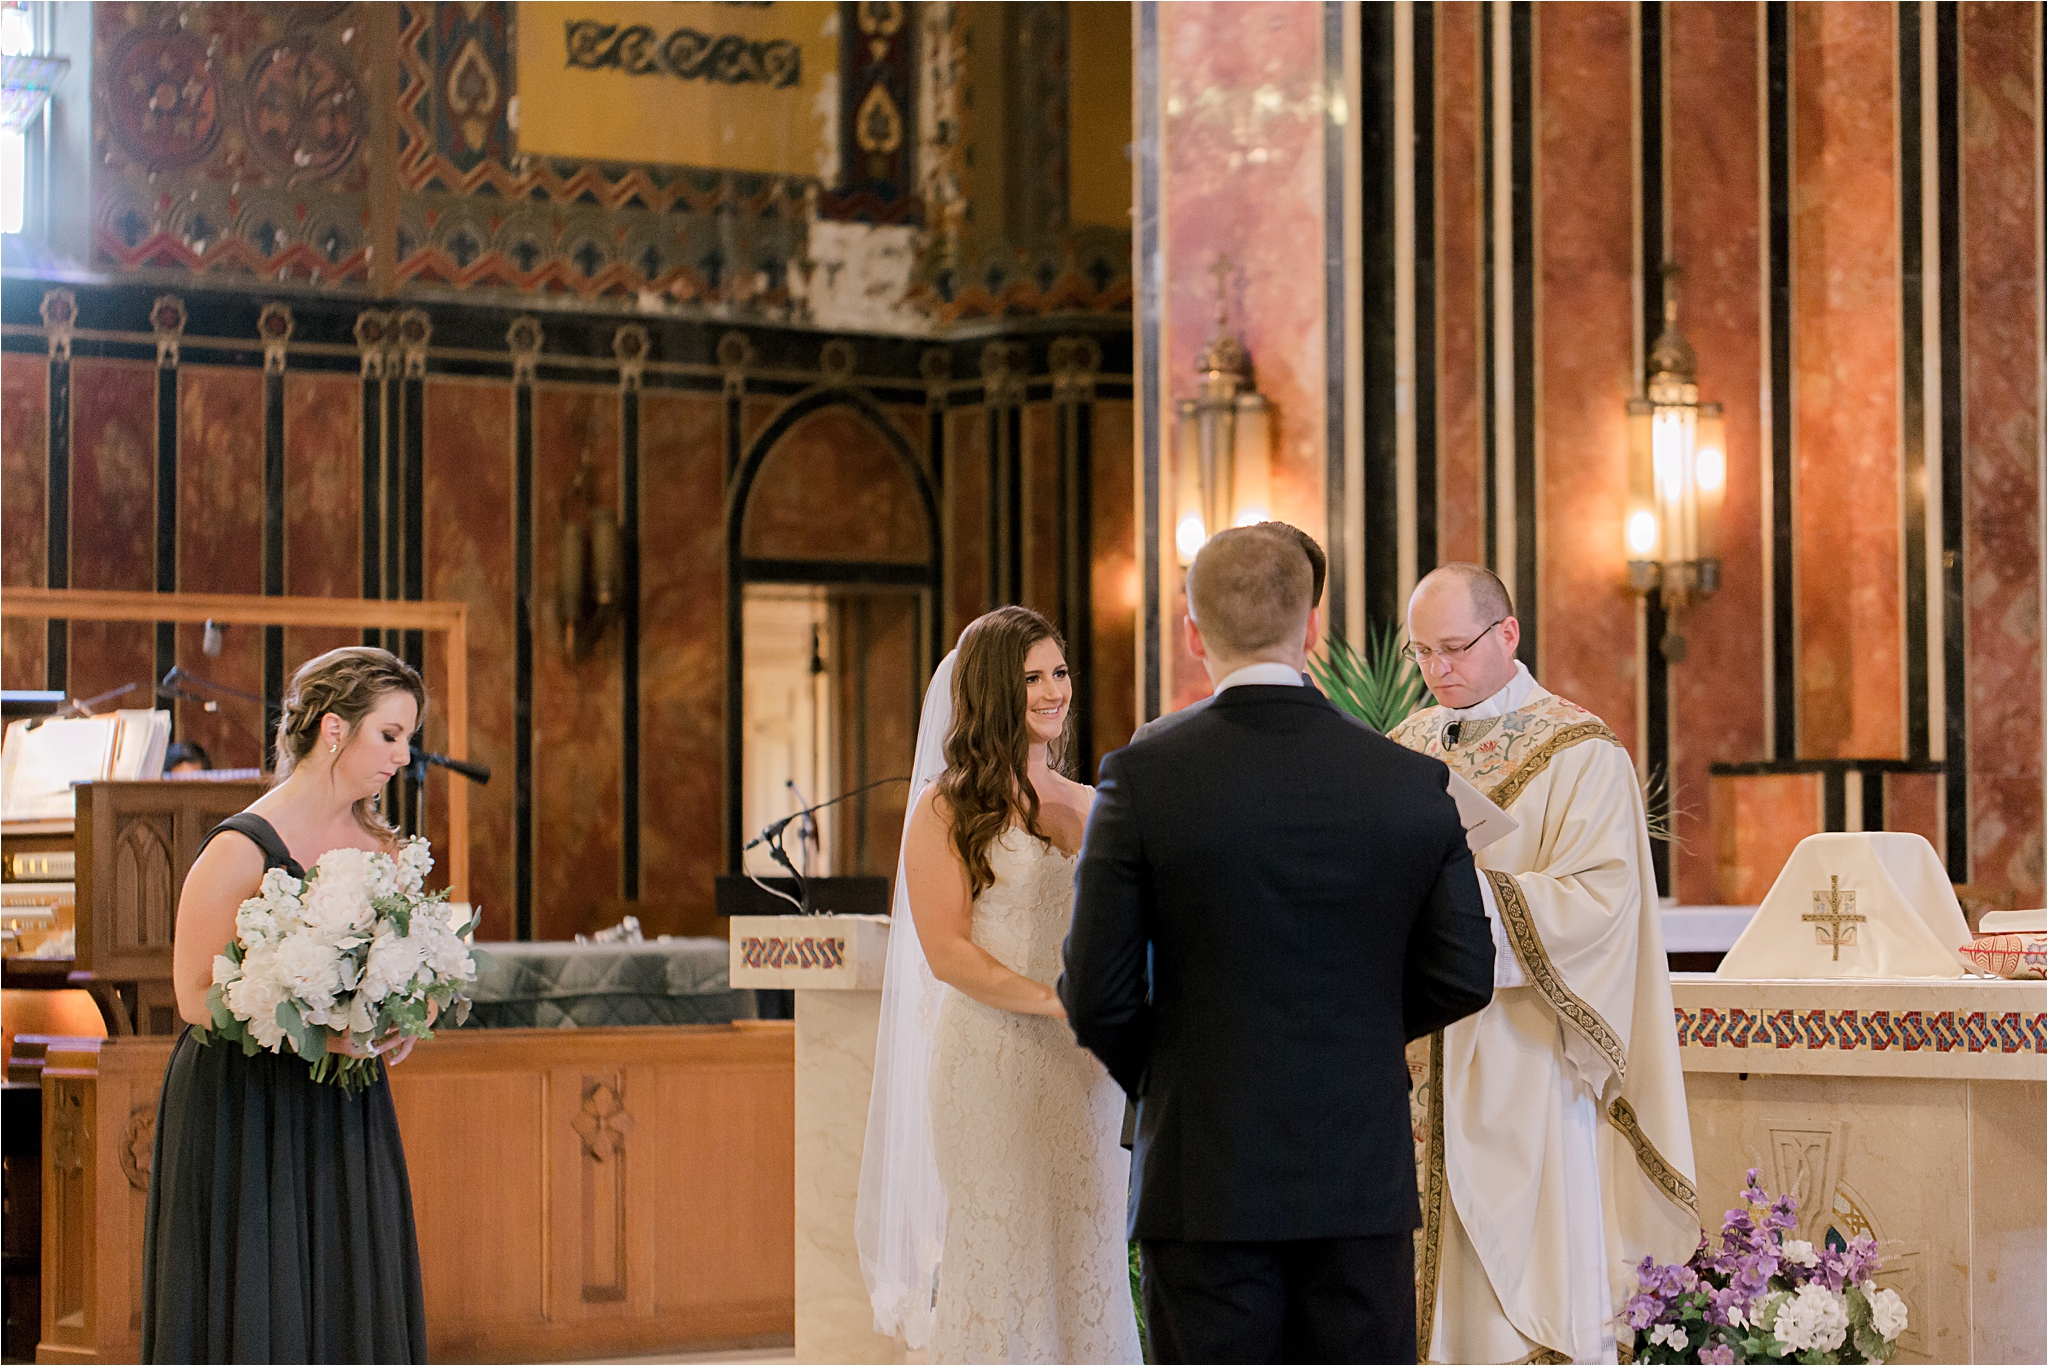 Cleveland wedding photographers Lake Erie Building Wedding